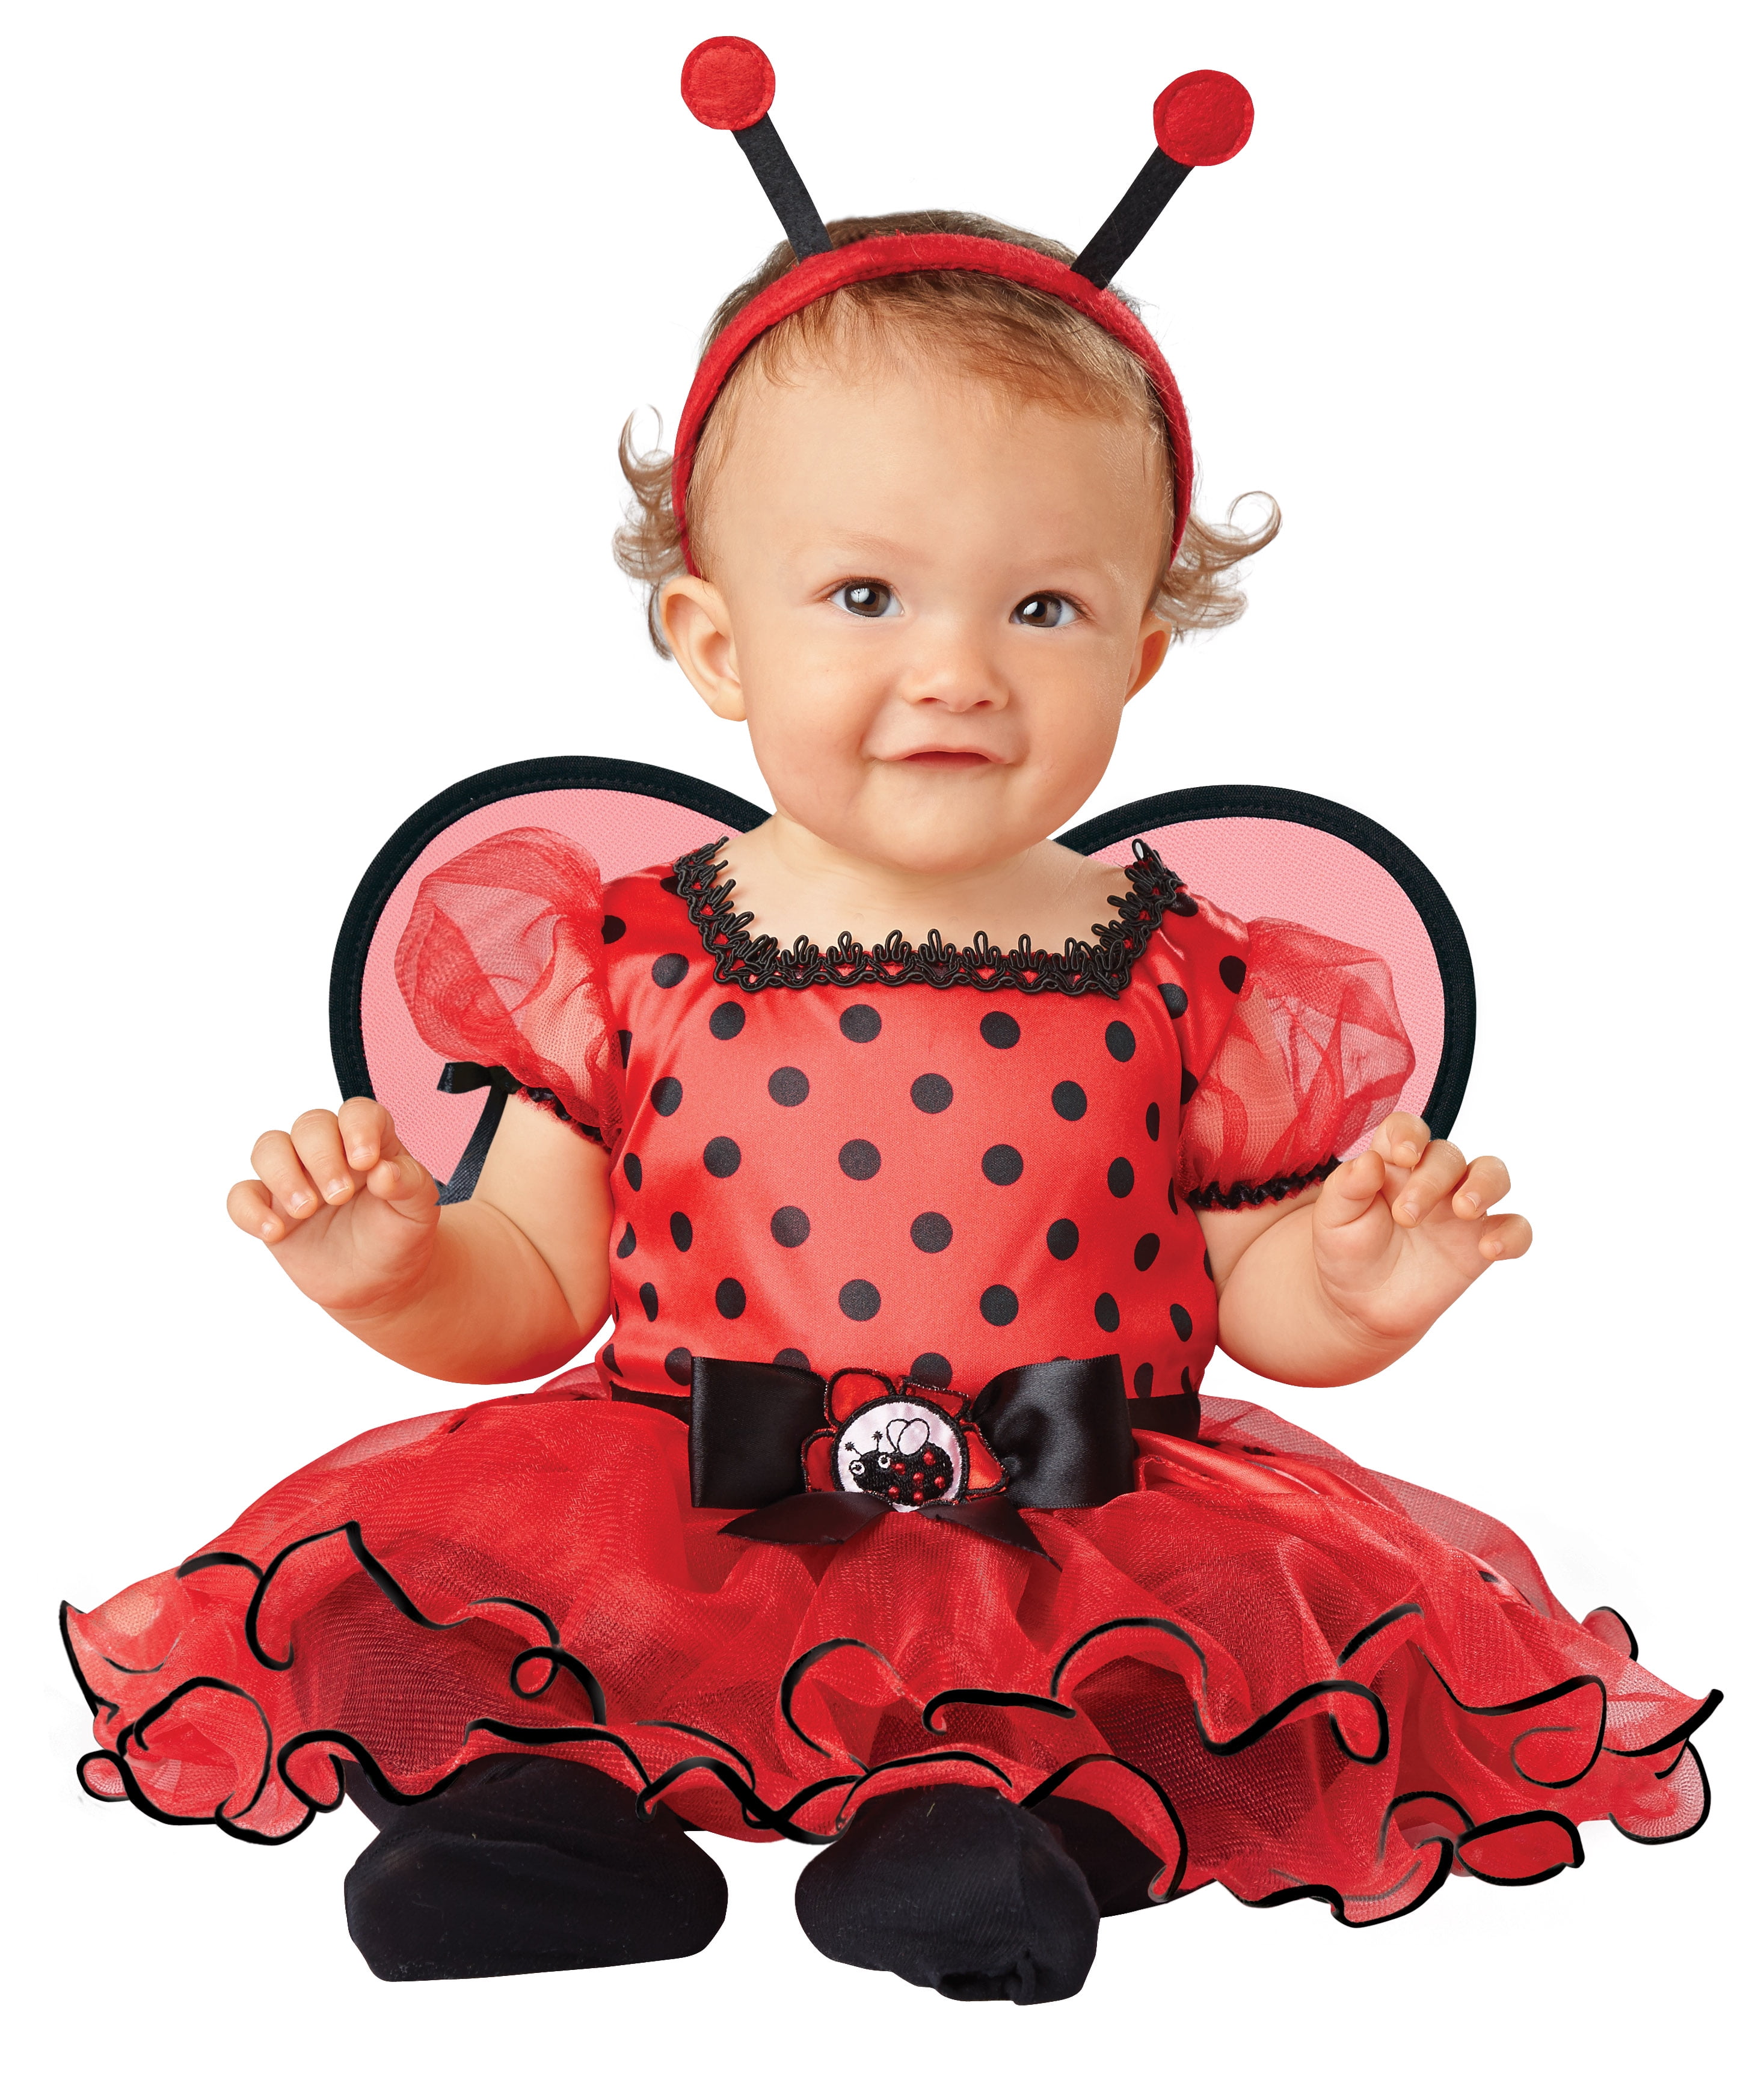 Baby Ladybug Costume, Ladybug Baby Costume